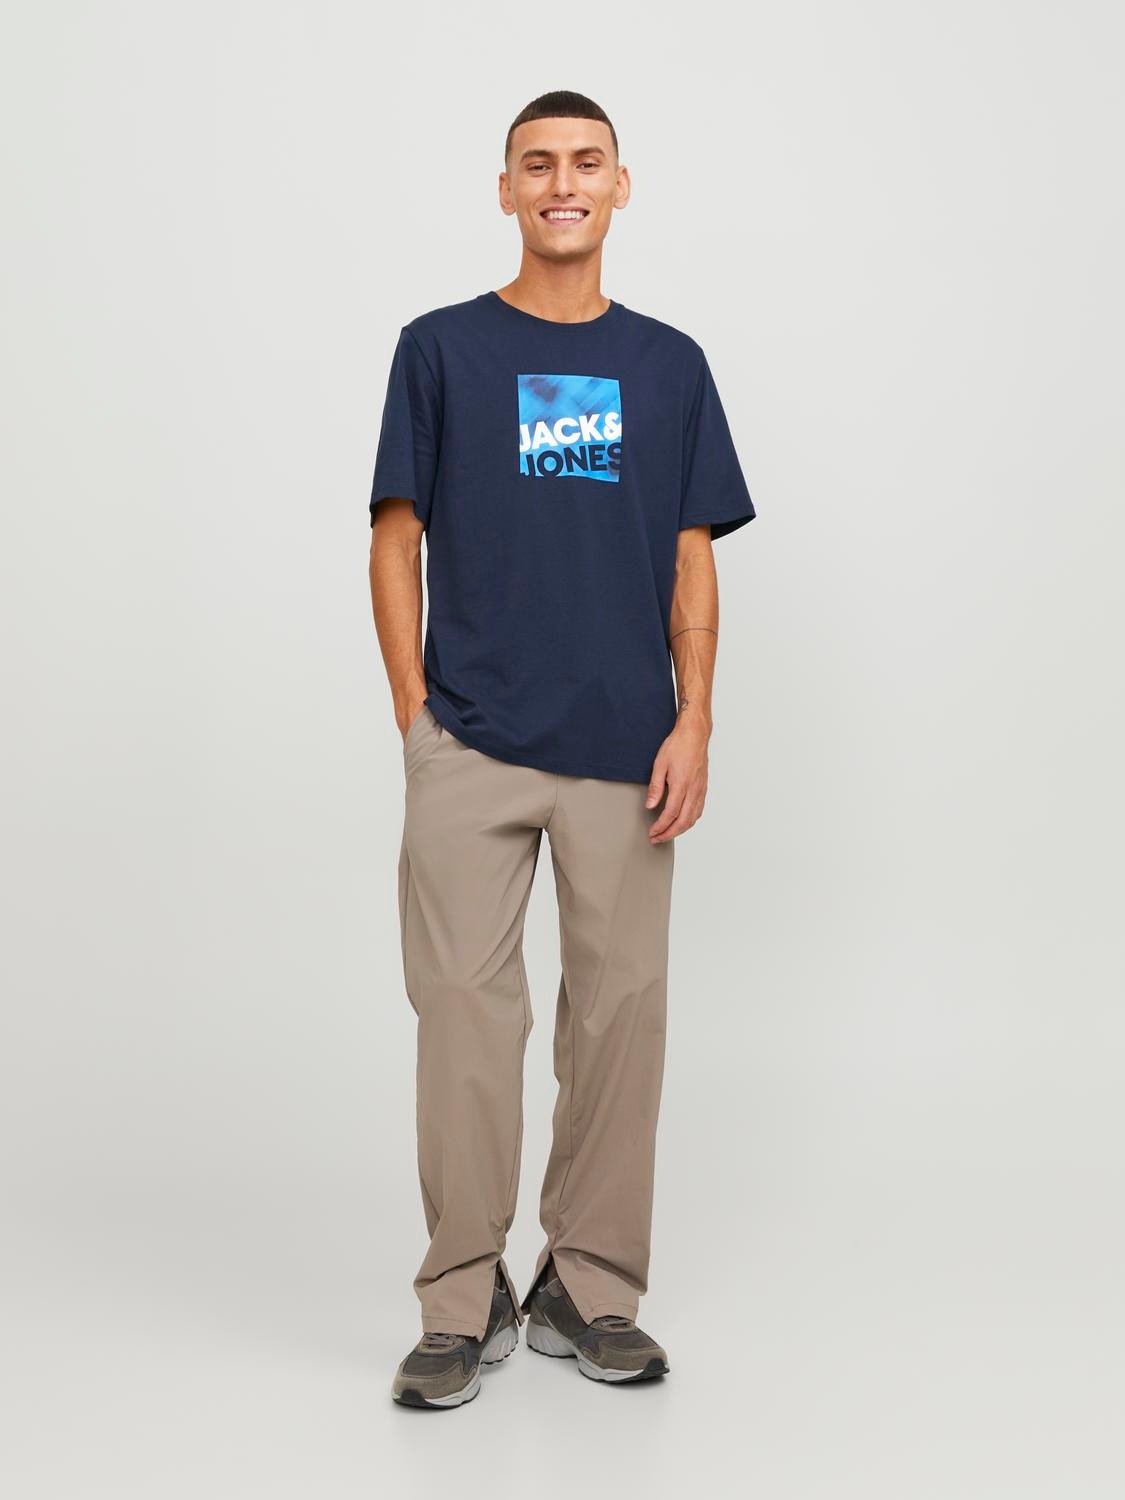 Jack & Jones Logo O-hals T-skjorte -Navy Blazer - 12246992